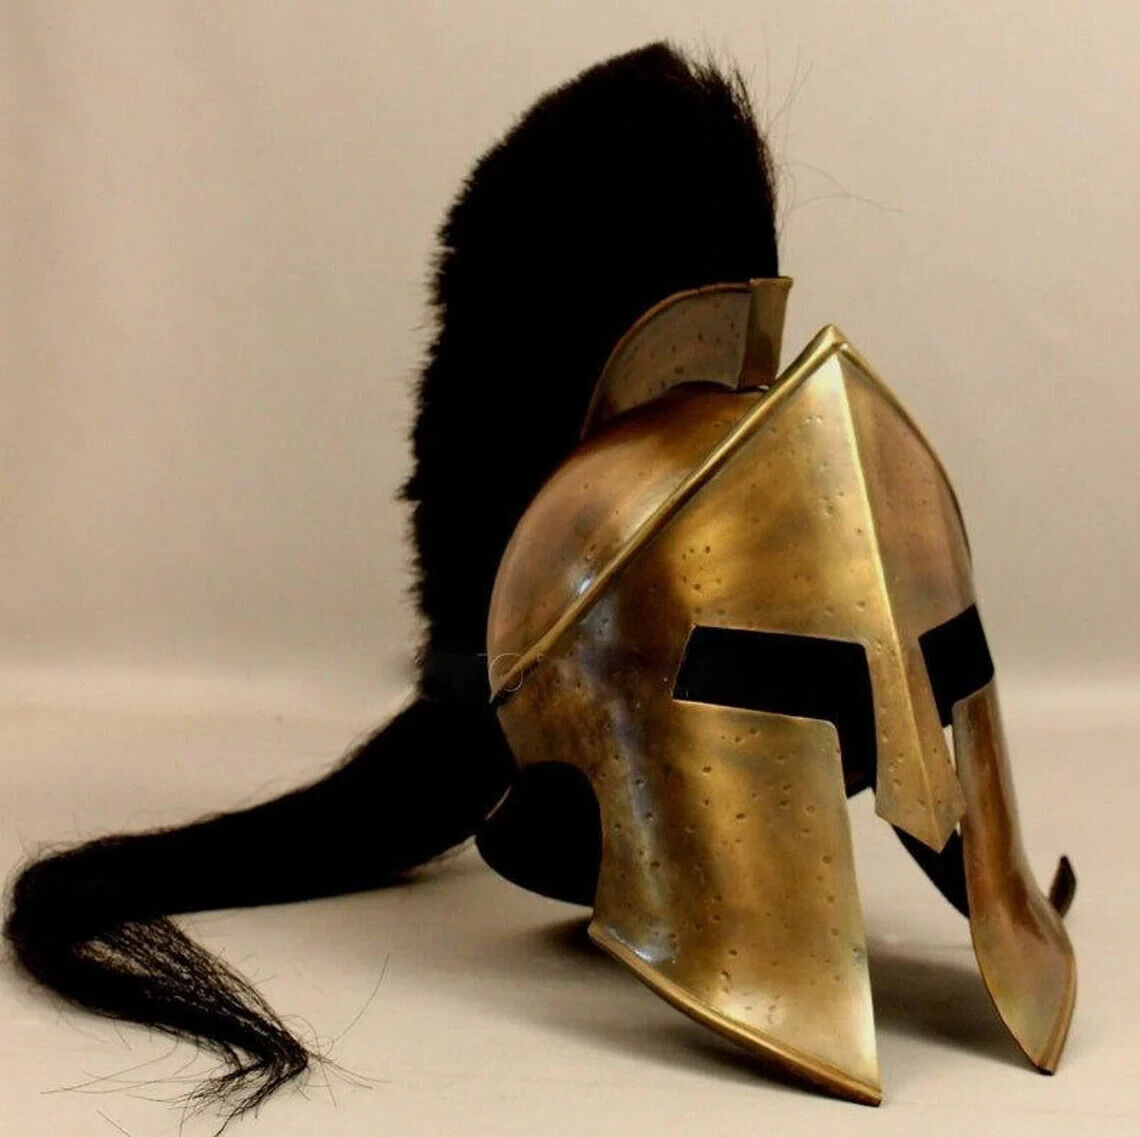 Great King Leonidas Spartan 300 Movie Helmet | Fully Functional Solid Steel